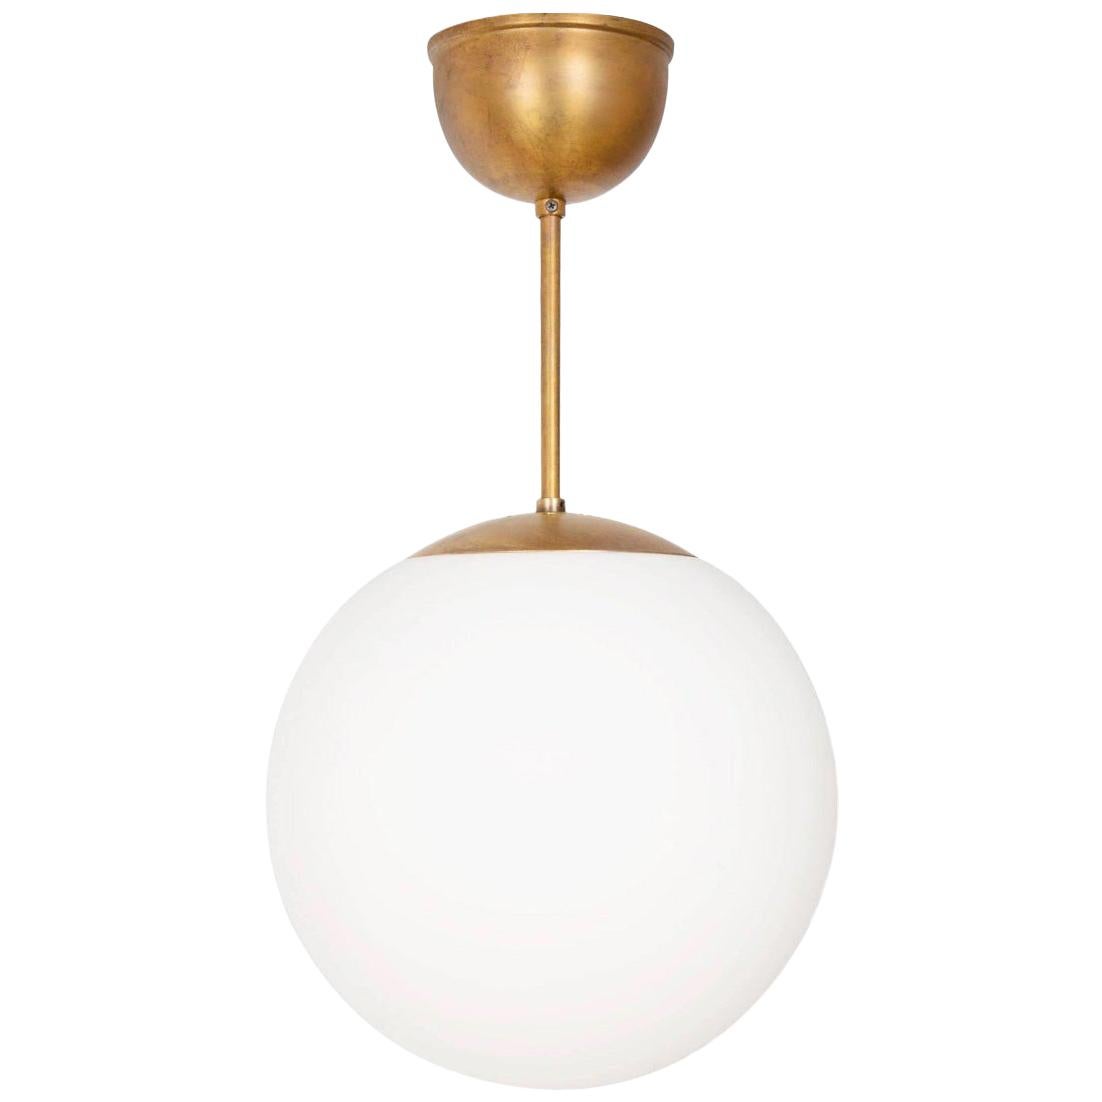 Konsthantverk Glob Brass D20 Ceiling Lamp